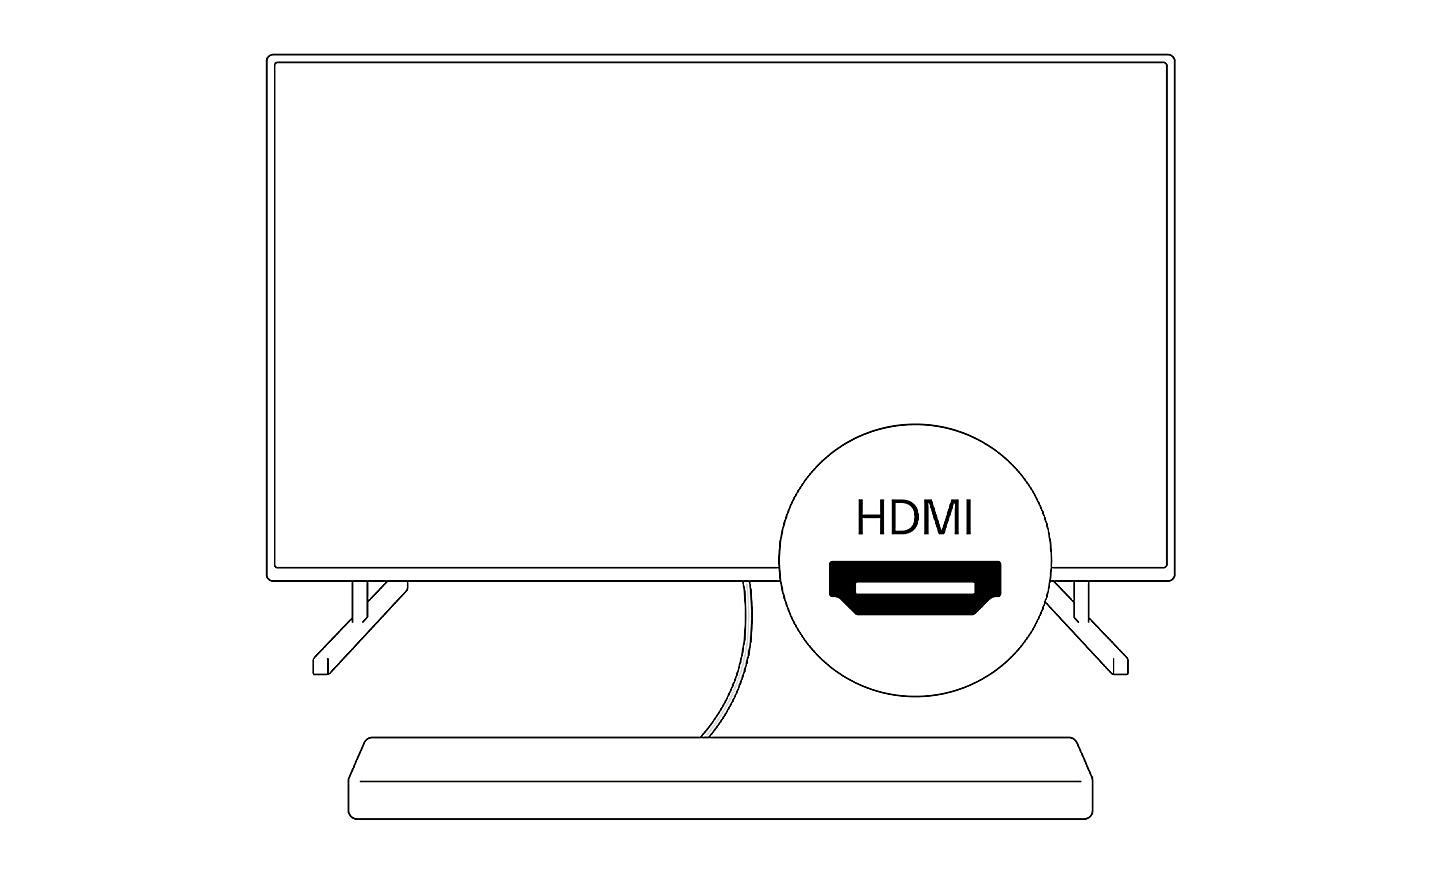 Slika sa konturama soundbara koji se povezuje sa TV-om zajedno sa ikonom HDMI u krugu